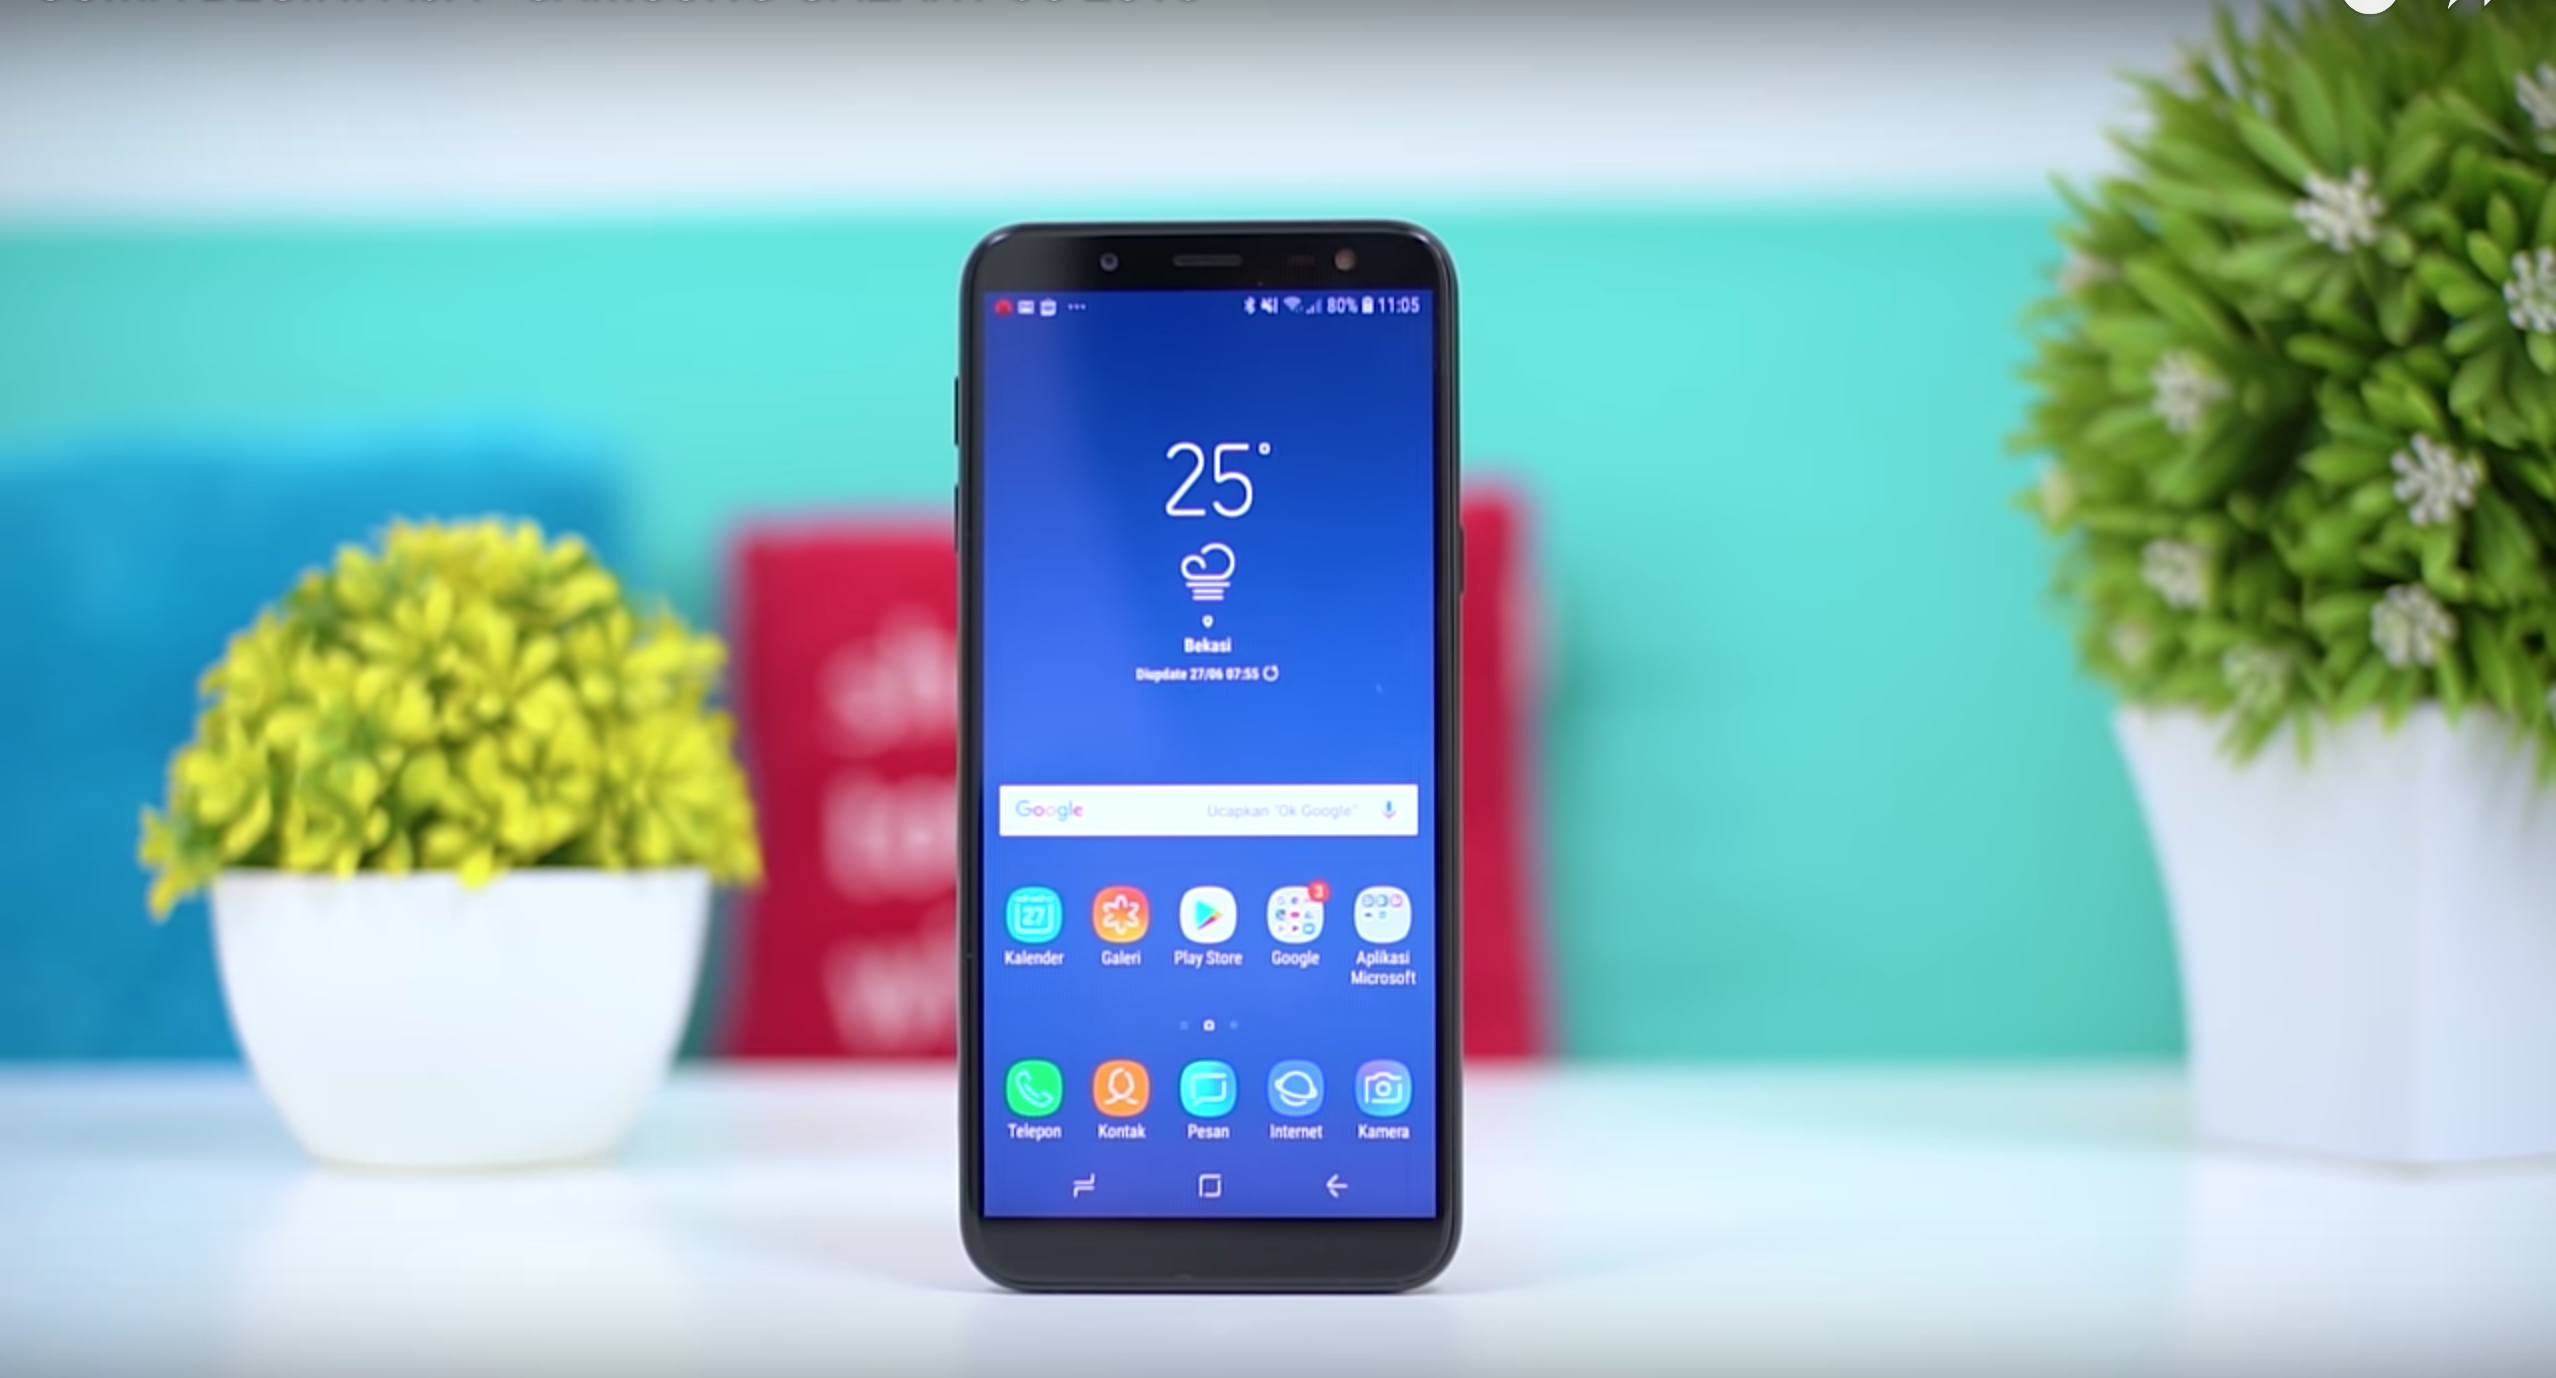 Samsung Galaxy J6 (2018) smarttelefon - fordeler og ulemper